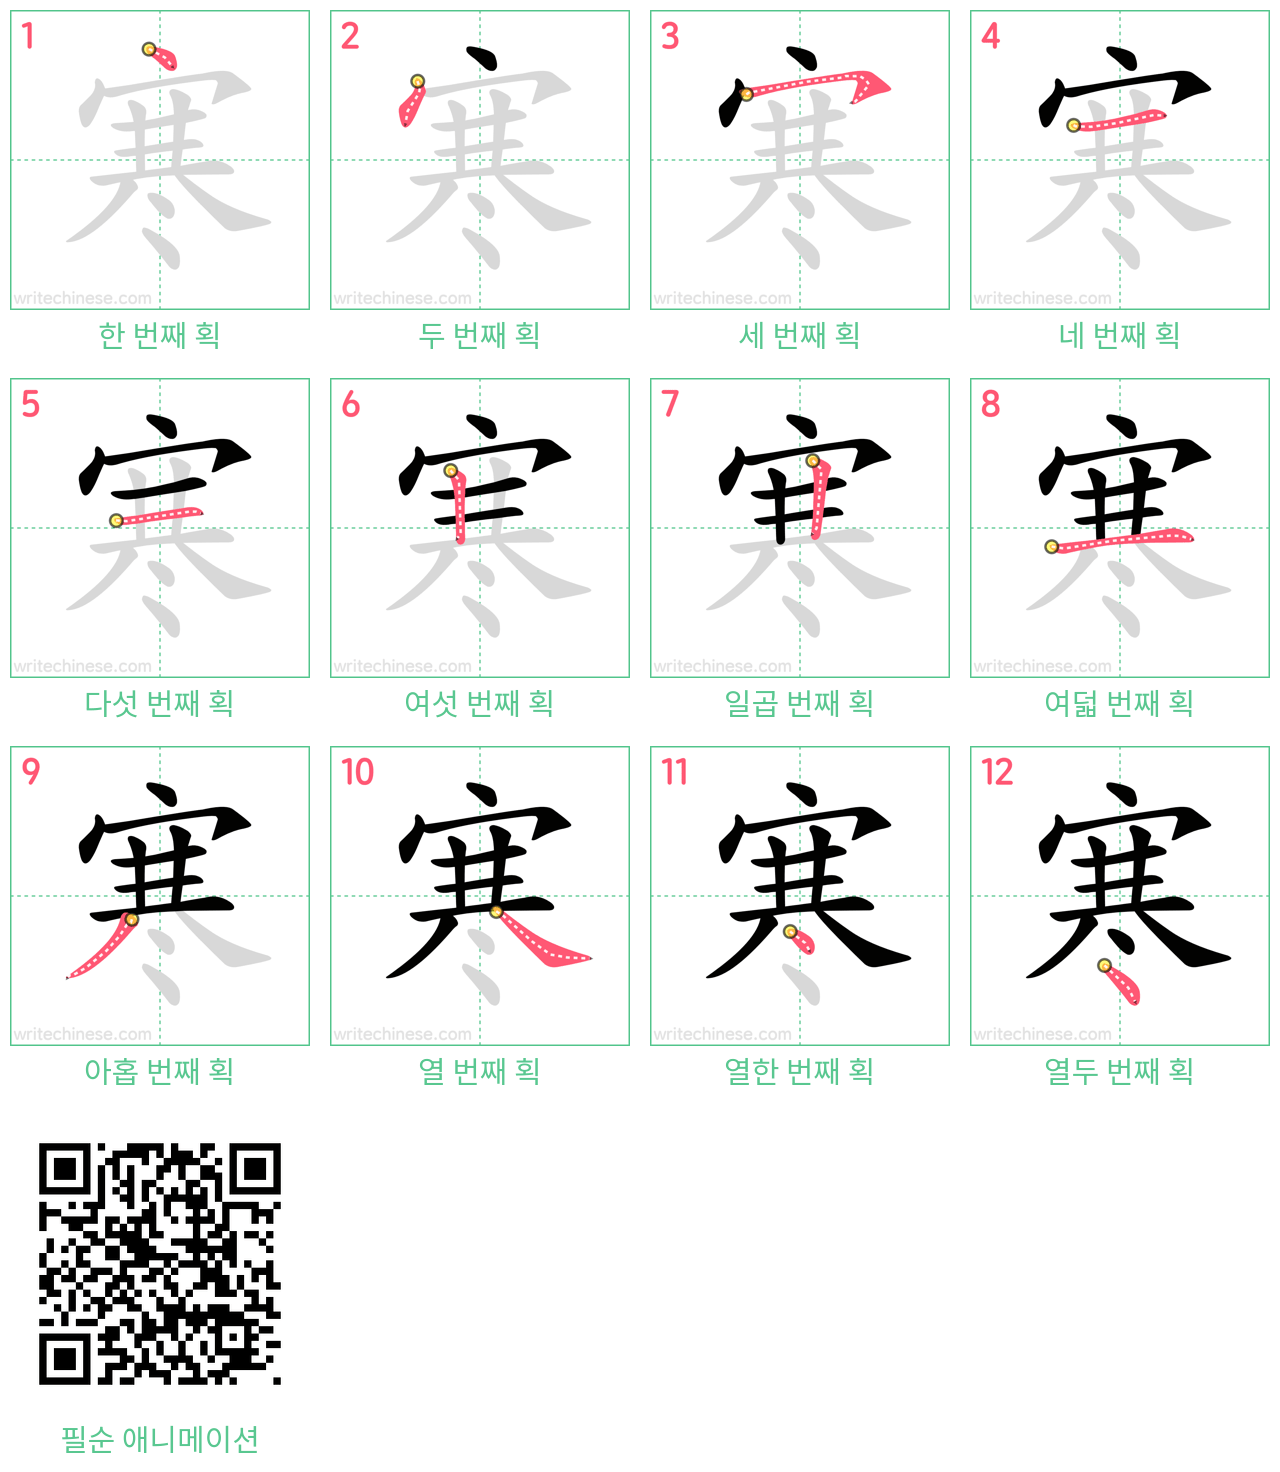 寒 step-by-step stroke order diagrams